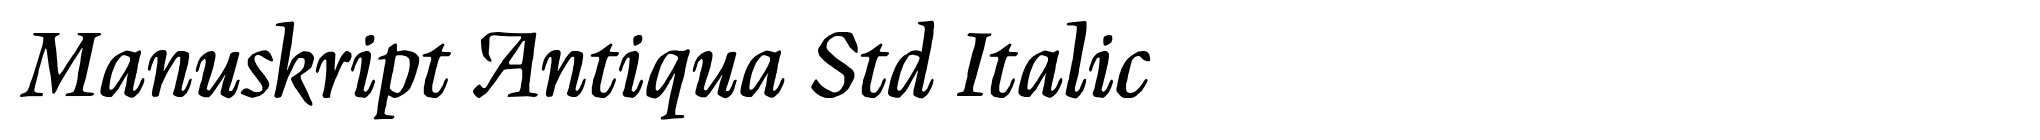 Manuskript Antiqua Std Italic image